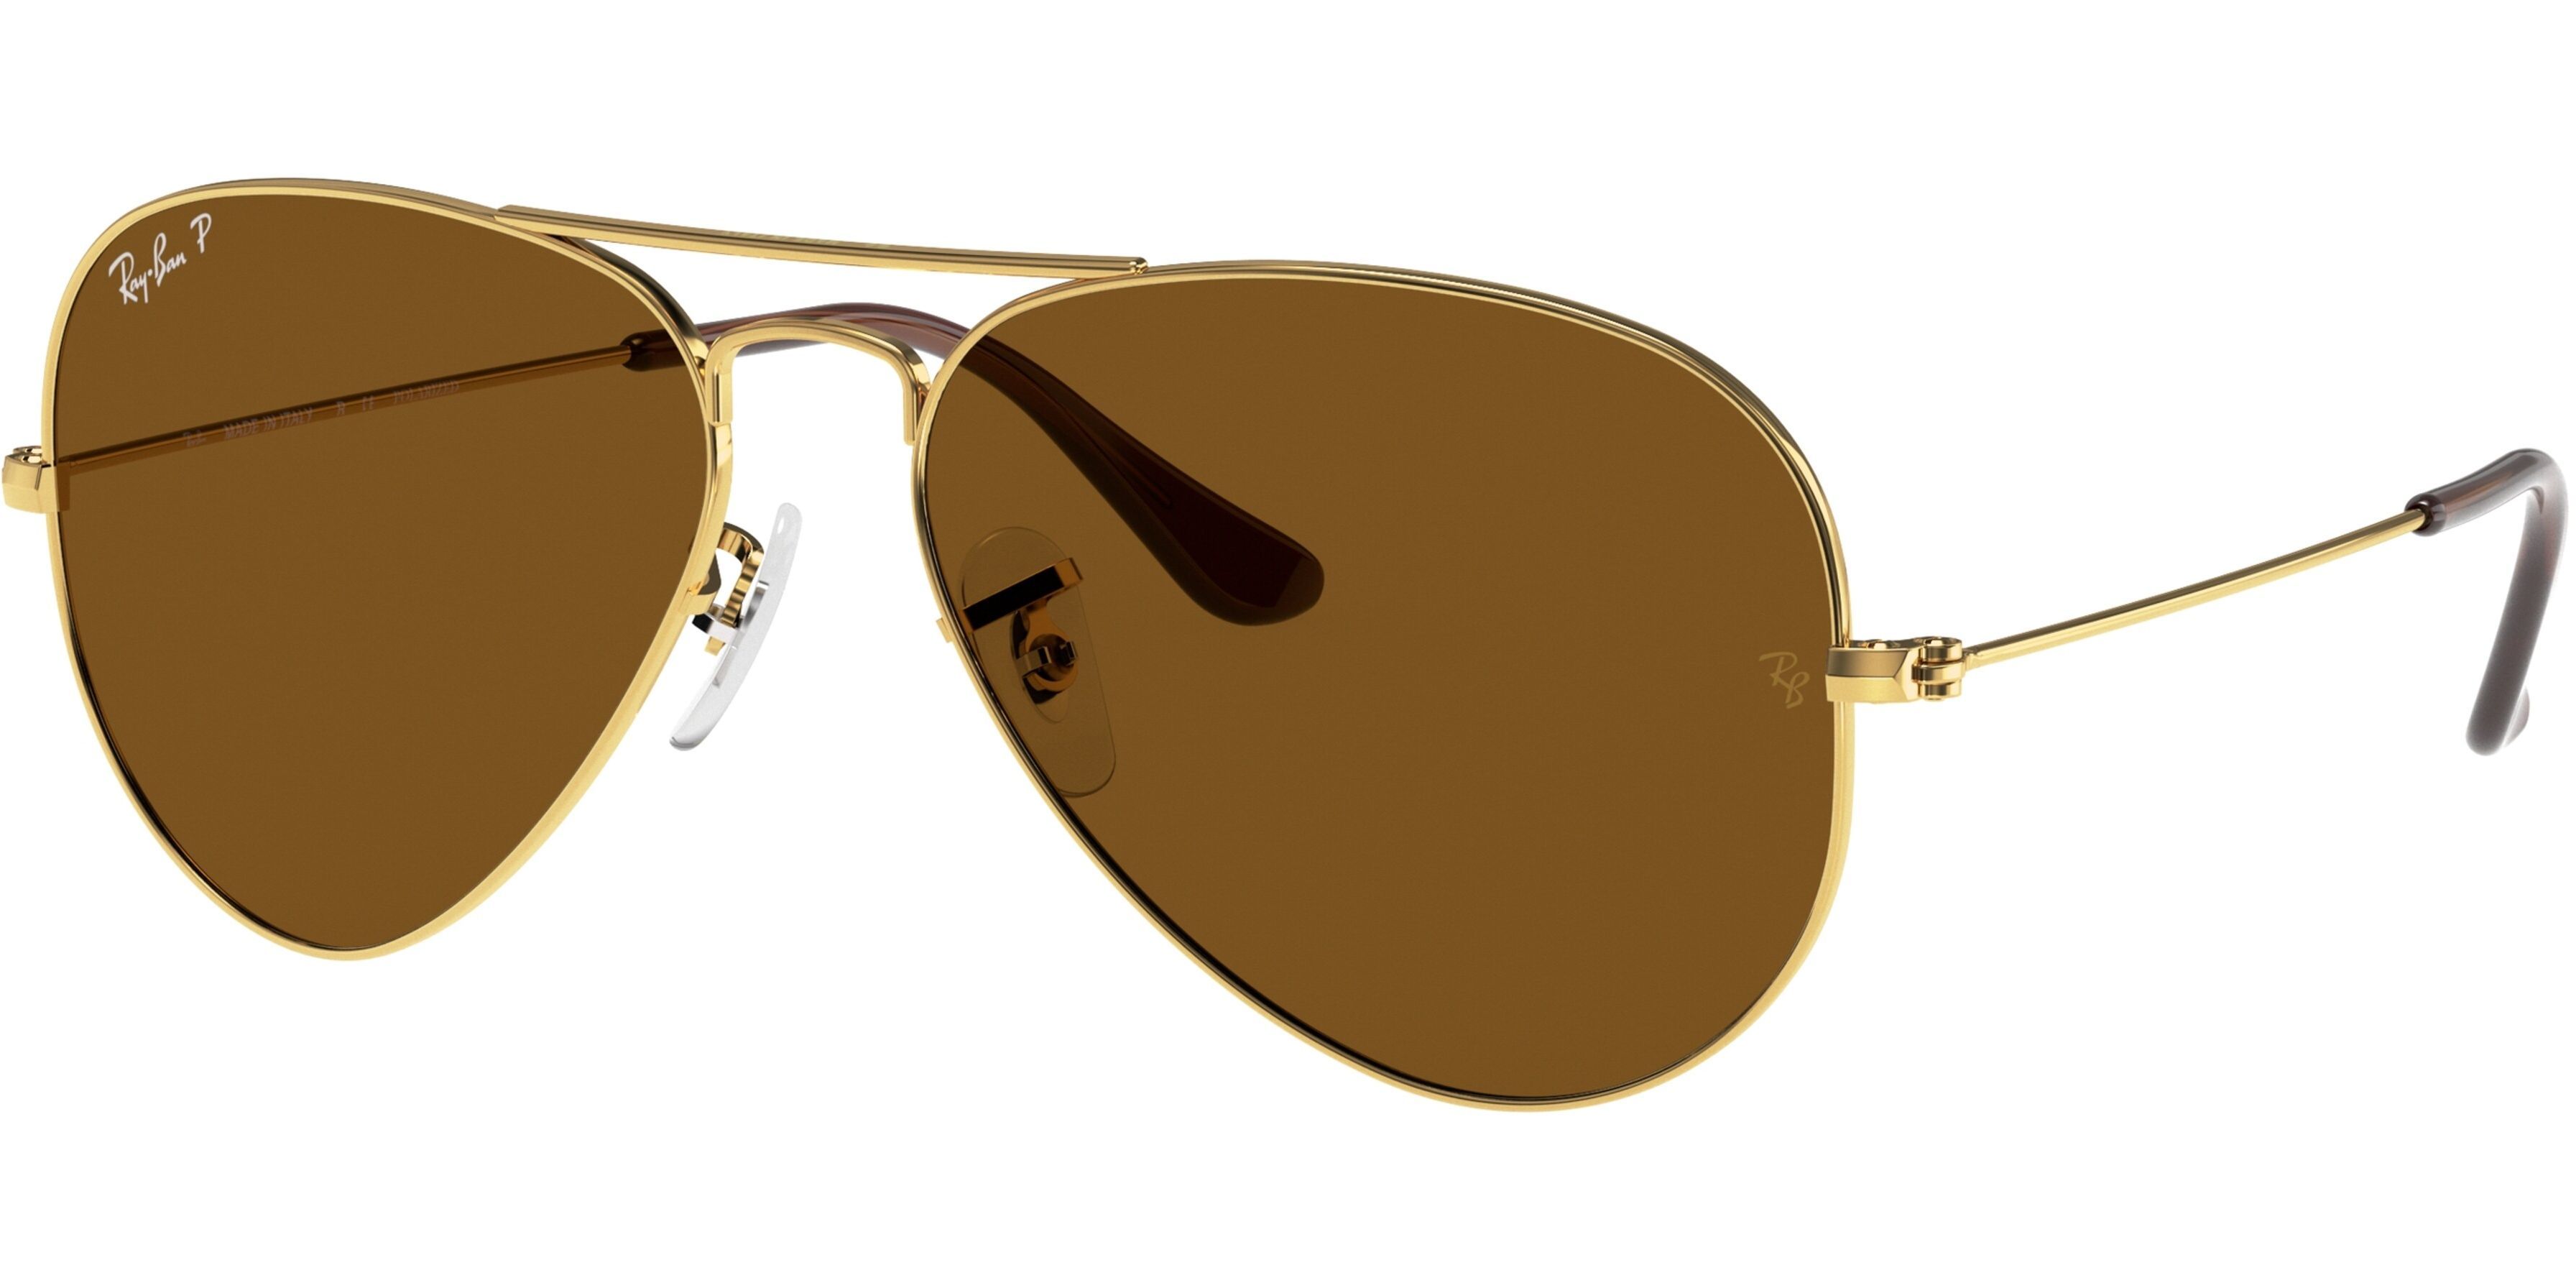 Sluneční brýle Ray-Ban® model 3025, barva obruby zlatá lesk, čočka hnědá polarizovaná, kód barevné varianty 00157. 